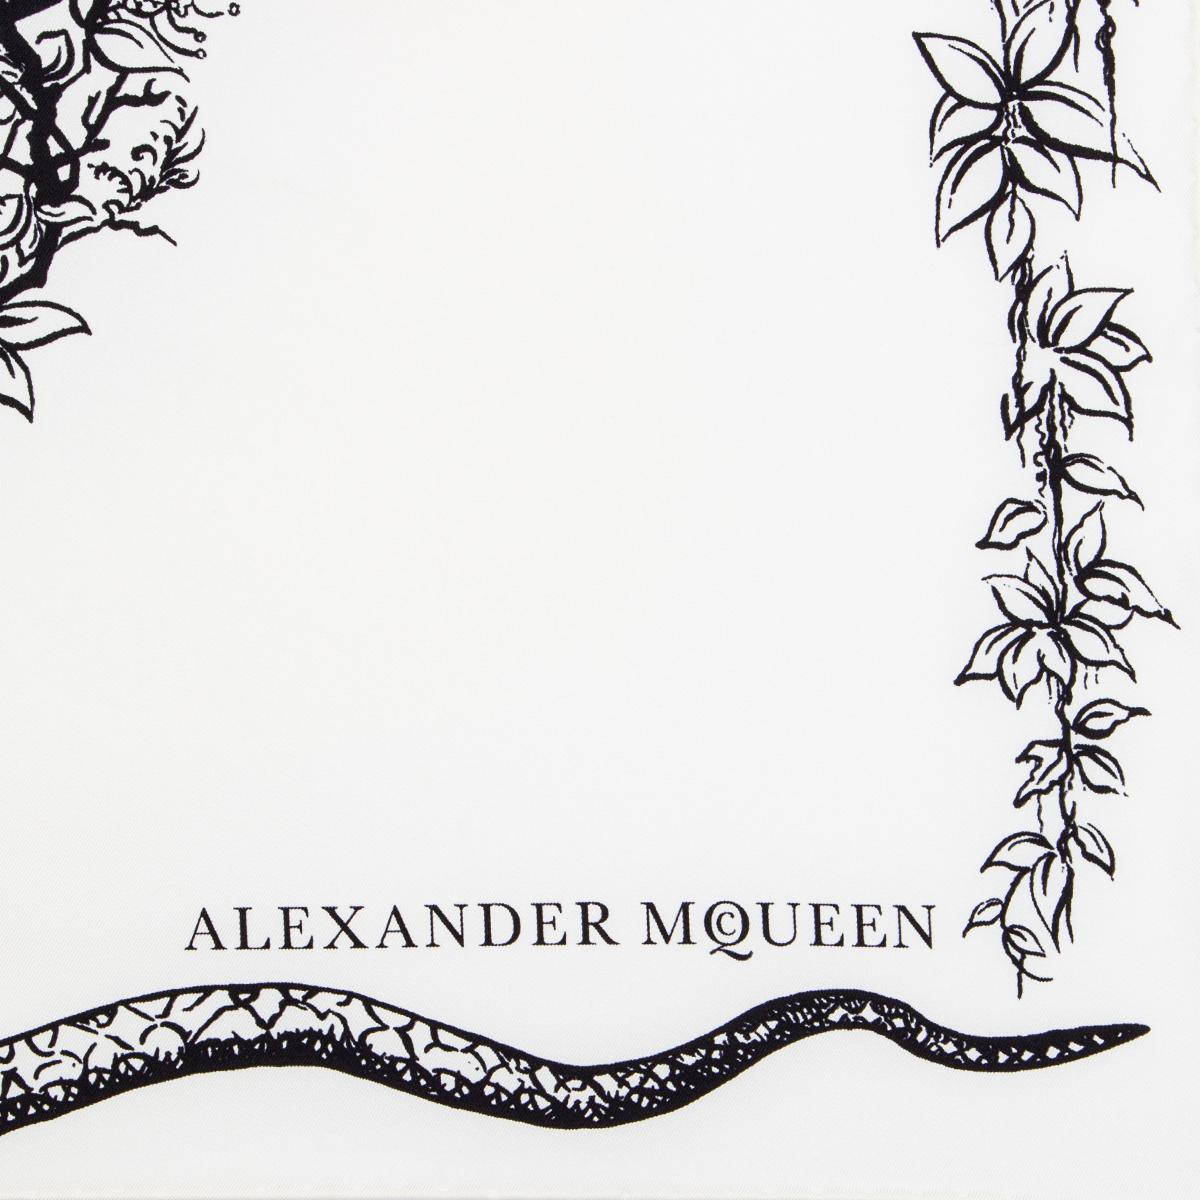 Alexander McQueen Snake Skull Bandana Schal aus weißem Seidenköper mit Details in Schwarz, Grau und Rot sowie weißen Perlen in den Ecken. Wurde getragen und ist in ausgezeichnetem Zustand.

Breite 60cm (23.4in)
Länge 60cm (23.4in)